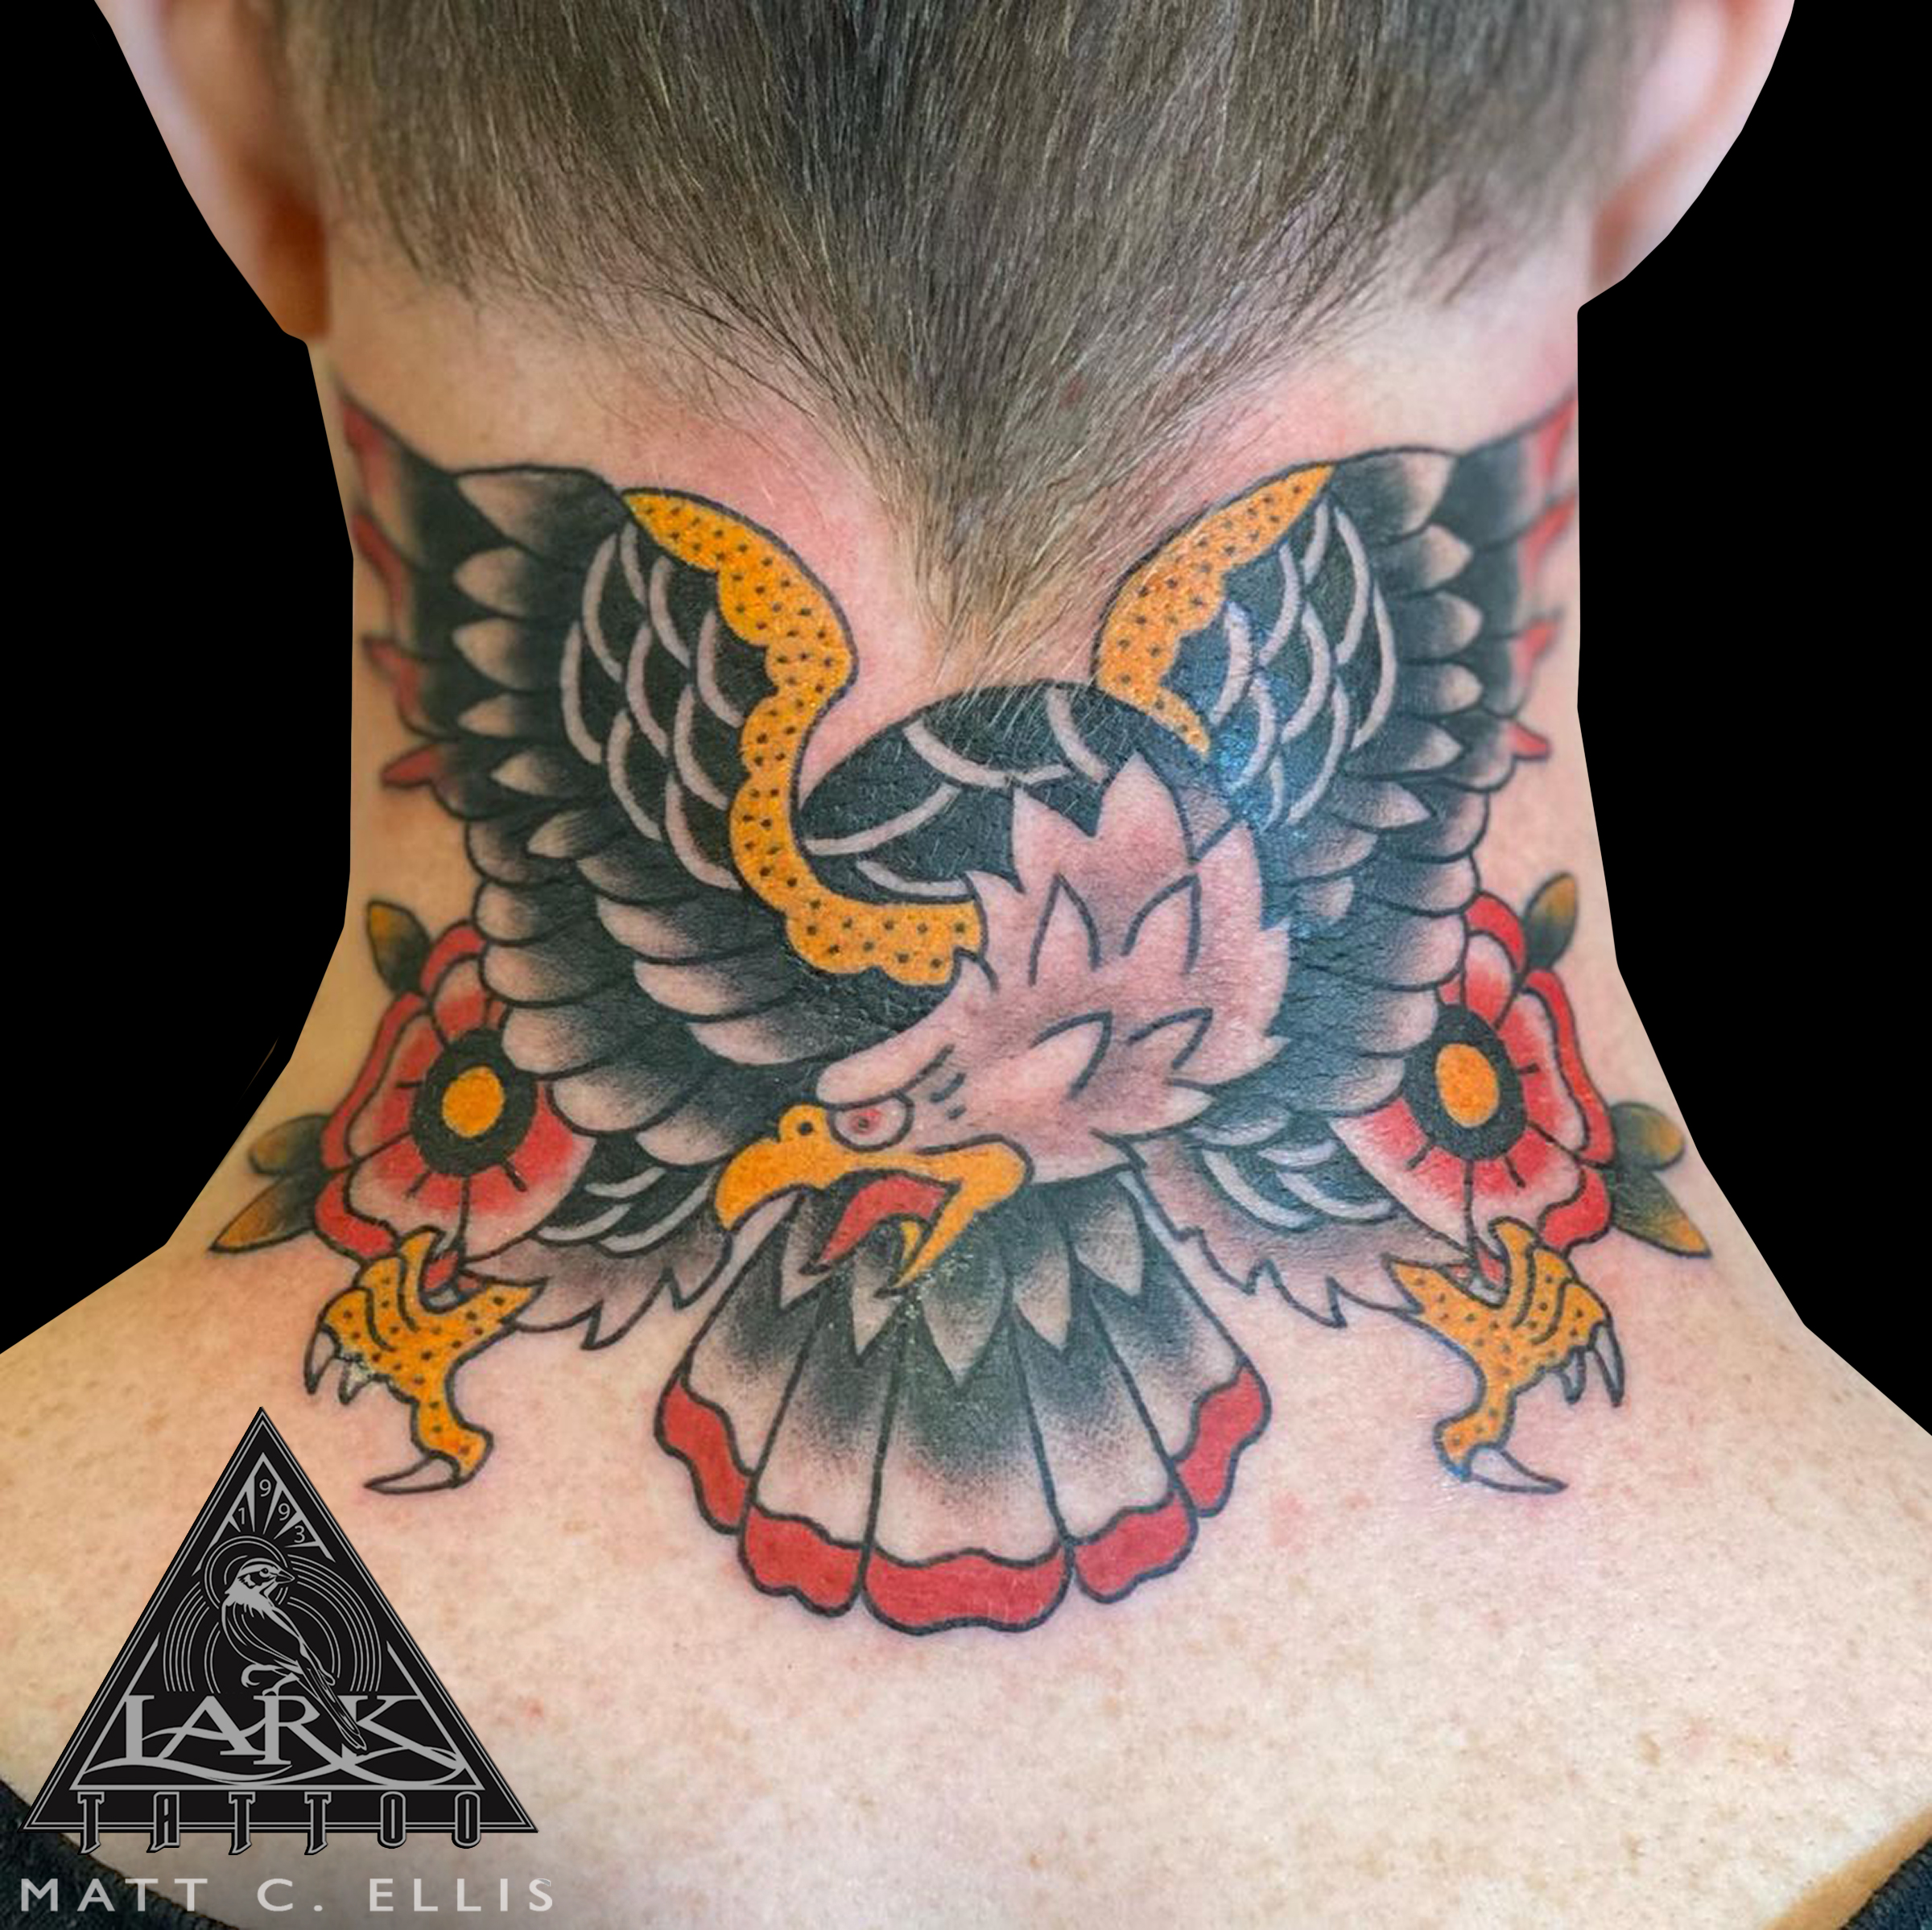 #LarkTattoo #MattEllis #MattEllisLarkTattoo #Tattoo #Tattoos #Eagle #EagleTattoo #ColorTattoo #TraditionalTattoo #AmericanTraditional #AmericanTraditionalTattoo #ColorTraditionalTattoo #ColorAmericanTraditionalTattoo #NeckTattoo #AmericanTraditionalEagleTattoo #FlowerTattoo #TattooArtist #Tattoist #Tattooer #LongIslandTattooArtist #LongIslandTattooer #LongIslandTattoo #TattooOfTheDay #Tat #Tats #Tatts #Tatted #Inked #Ink #TattooInk #AmazingInk #AmazingTattoo #BodyArt #LarkTattooWestbury #Westbury #LongIsland #NY #NewYork #USA #Art #Tattedup #InkedUp #LarkTattoos